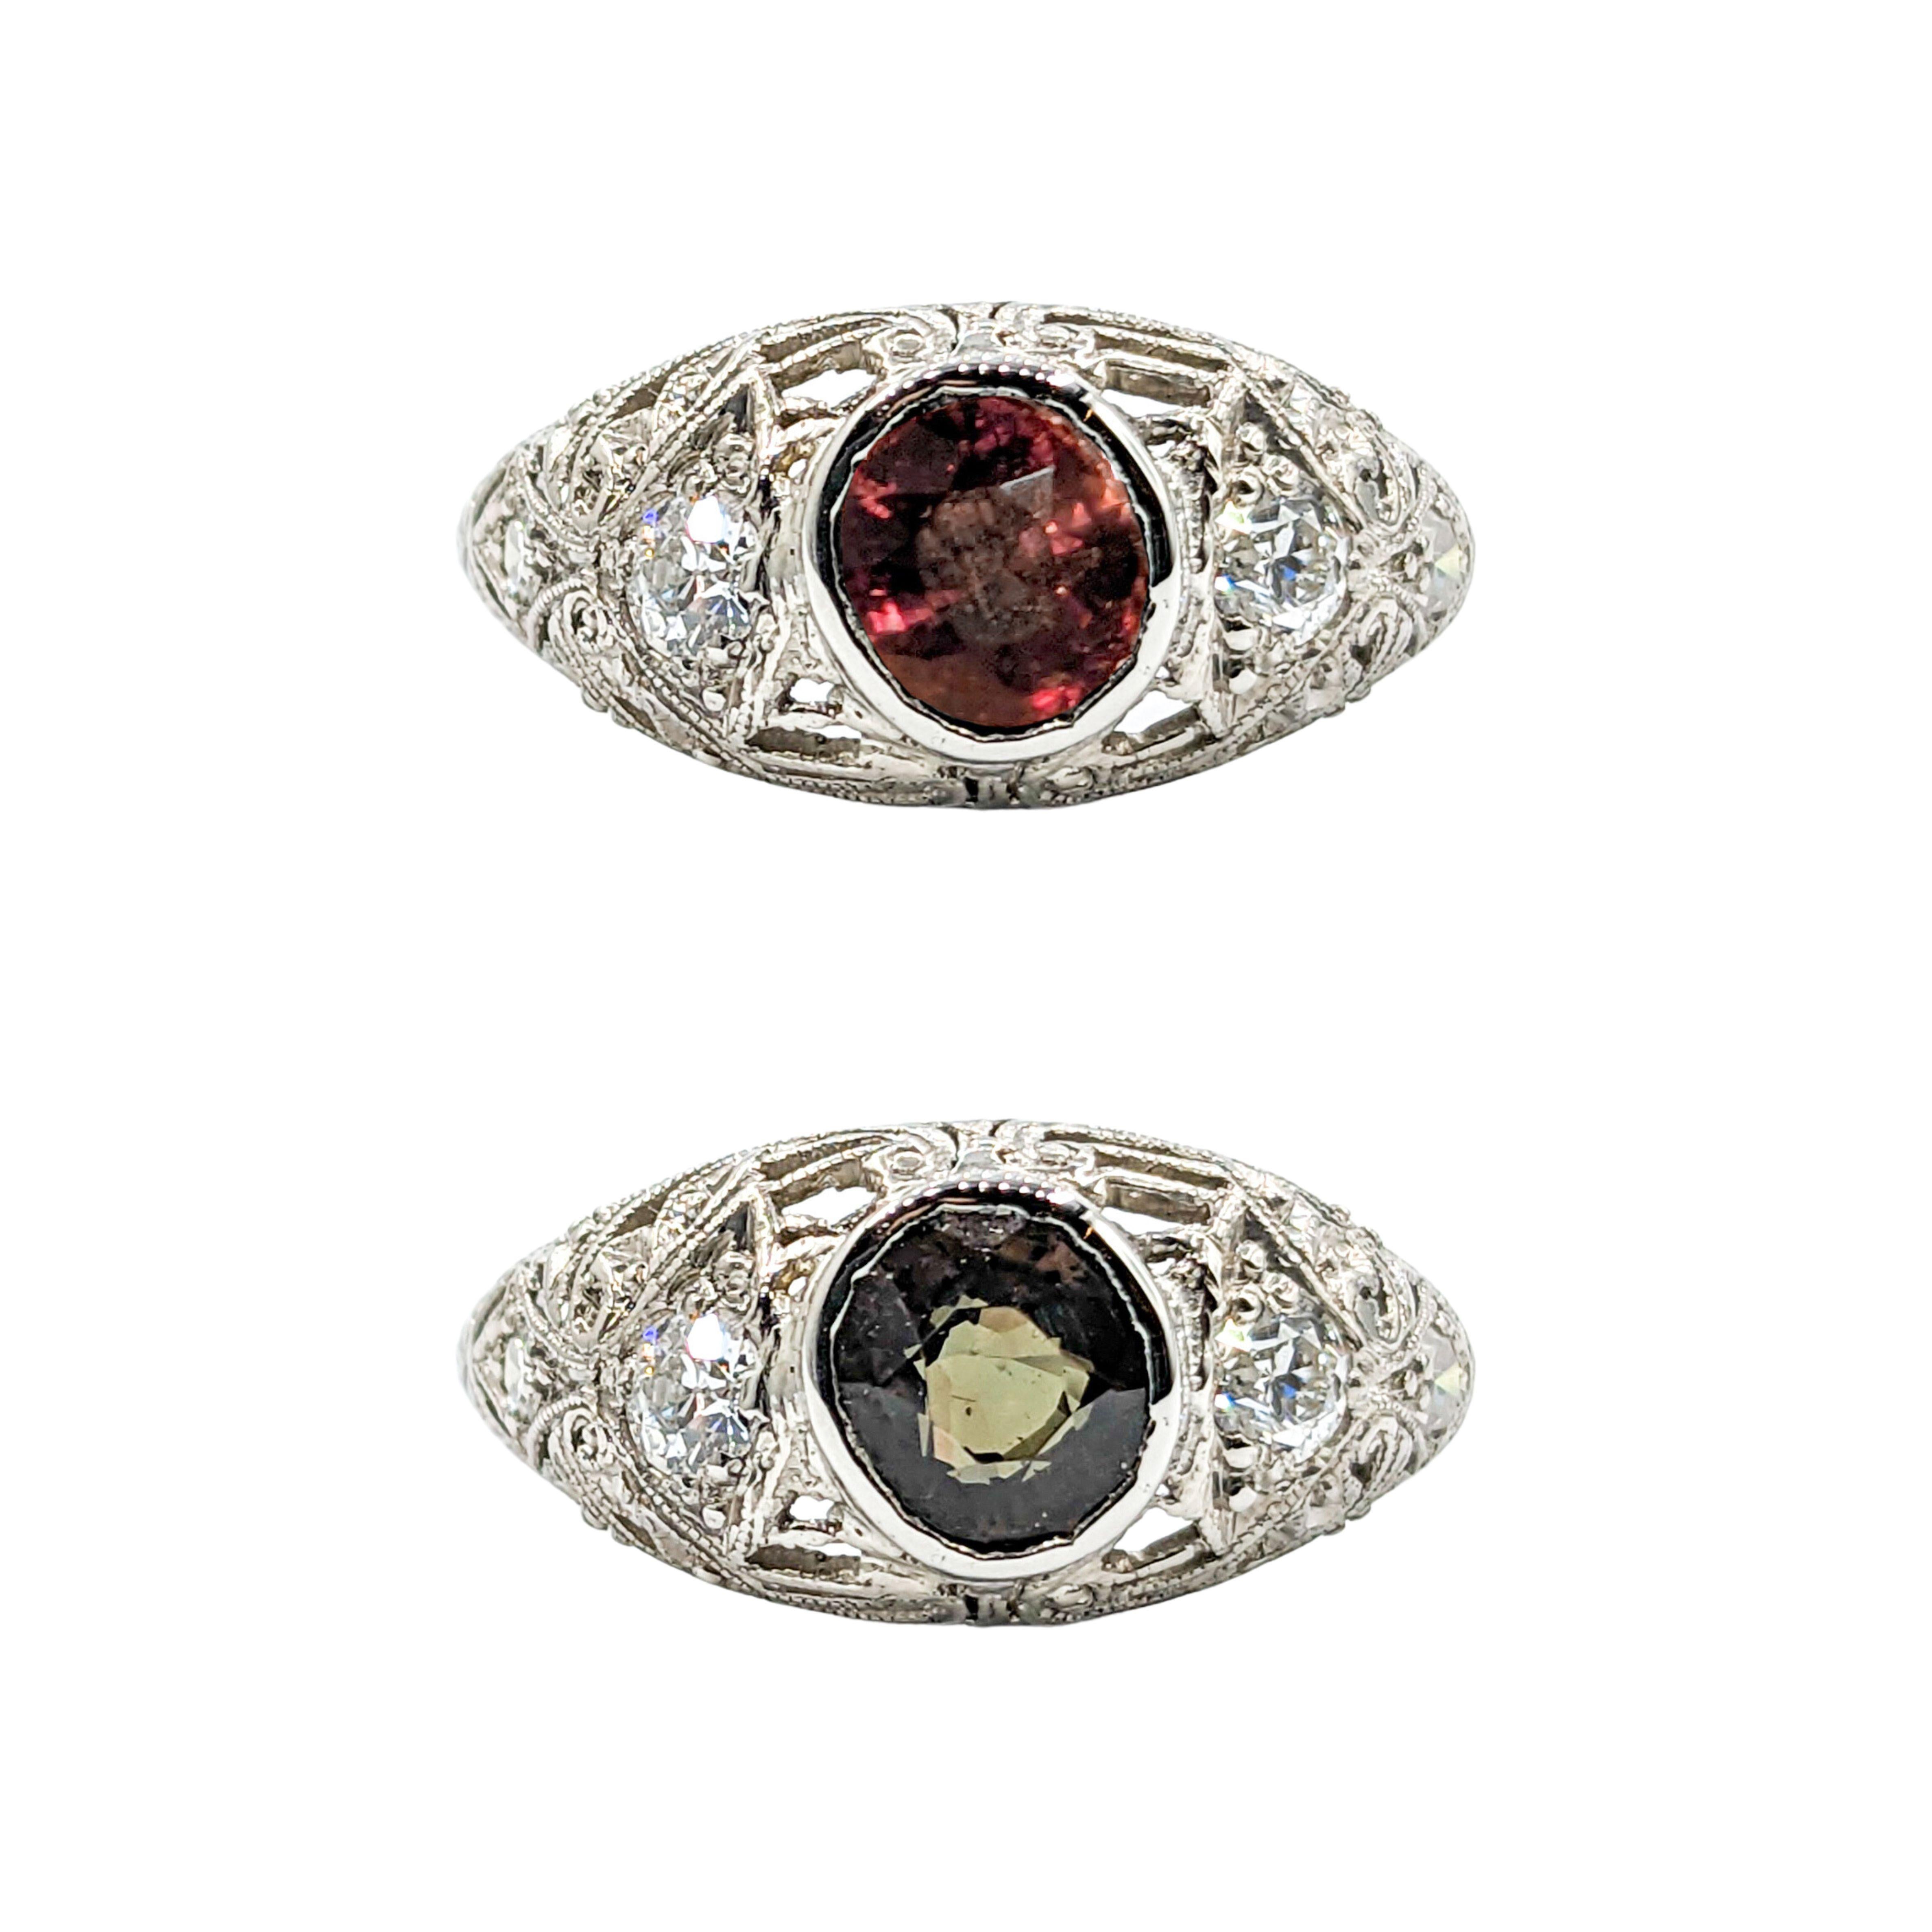 1,20 Karat natürlicher Alexandrit & Diamant Art Deco Platin Ring

Wir stellen Ihnen einen antiken Ring im Art-Déco-Stil vor, der meisterhaft aus Platin gefertigt ist. Das Herzstück ist ein natürlicher Alexandrit von 1,20 Karat, der für seine